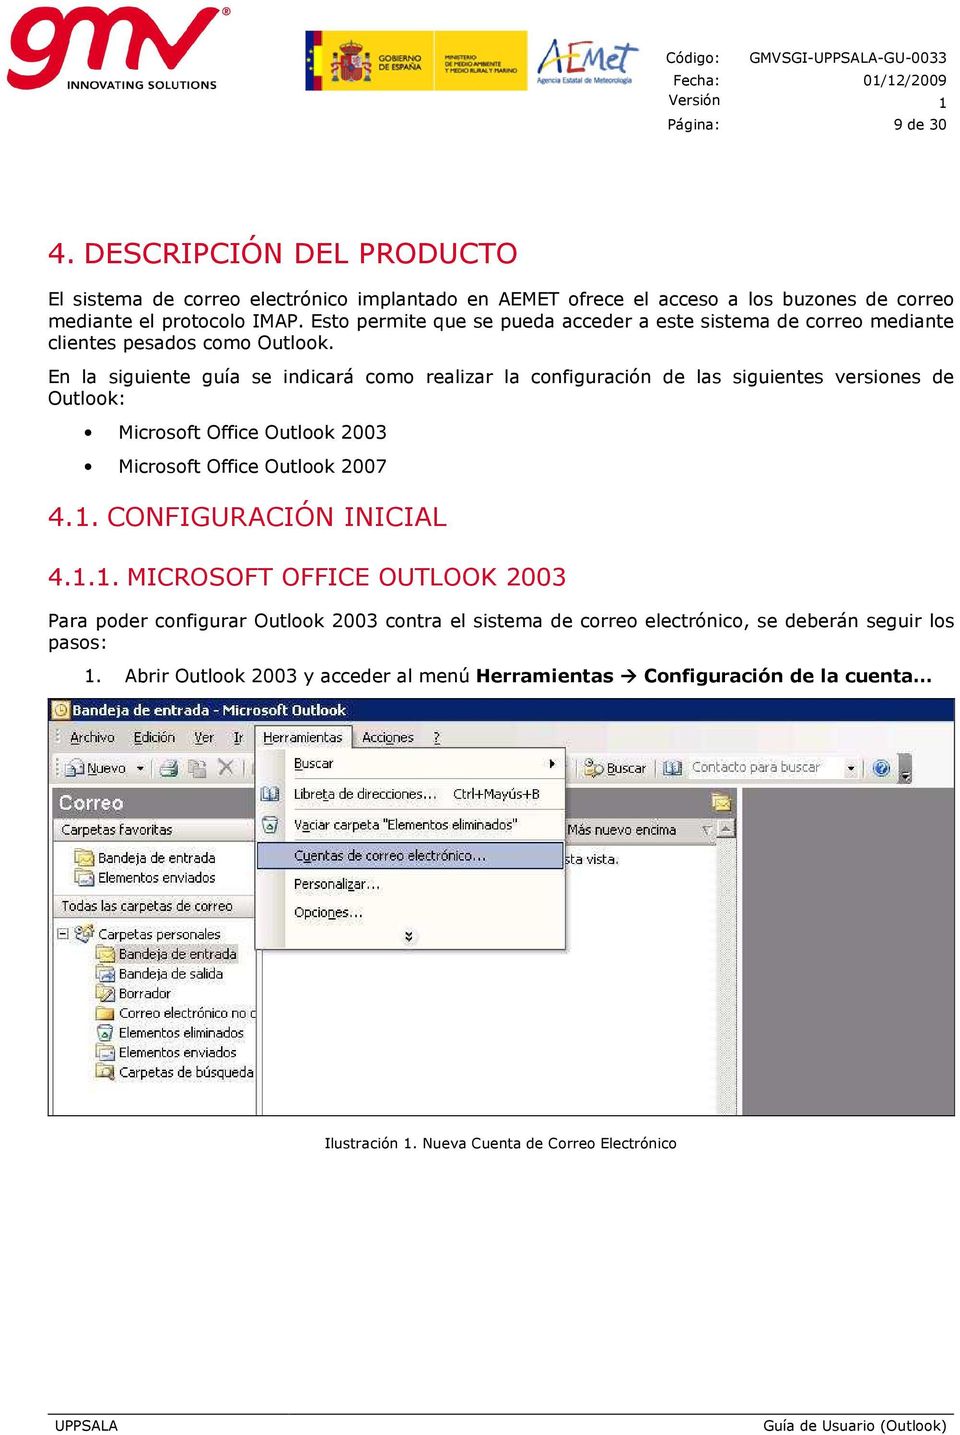 Esto permite que se pueda acceder a este sistema de correo mediante clientes pesados como Outlook.